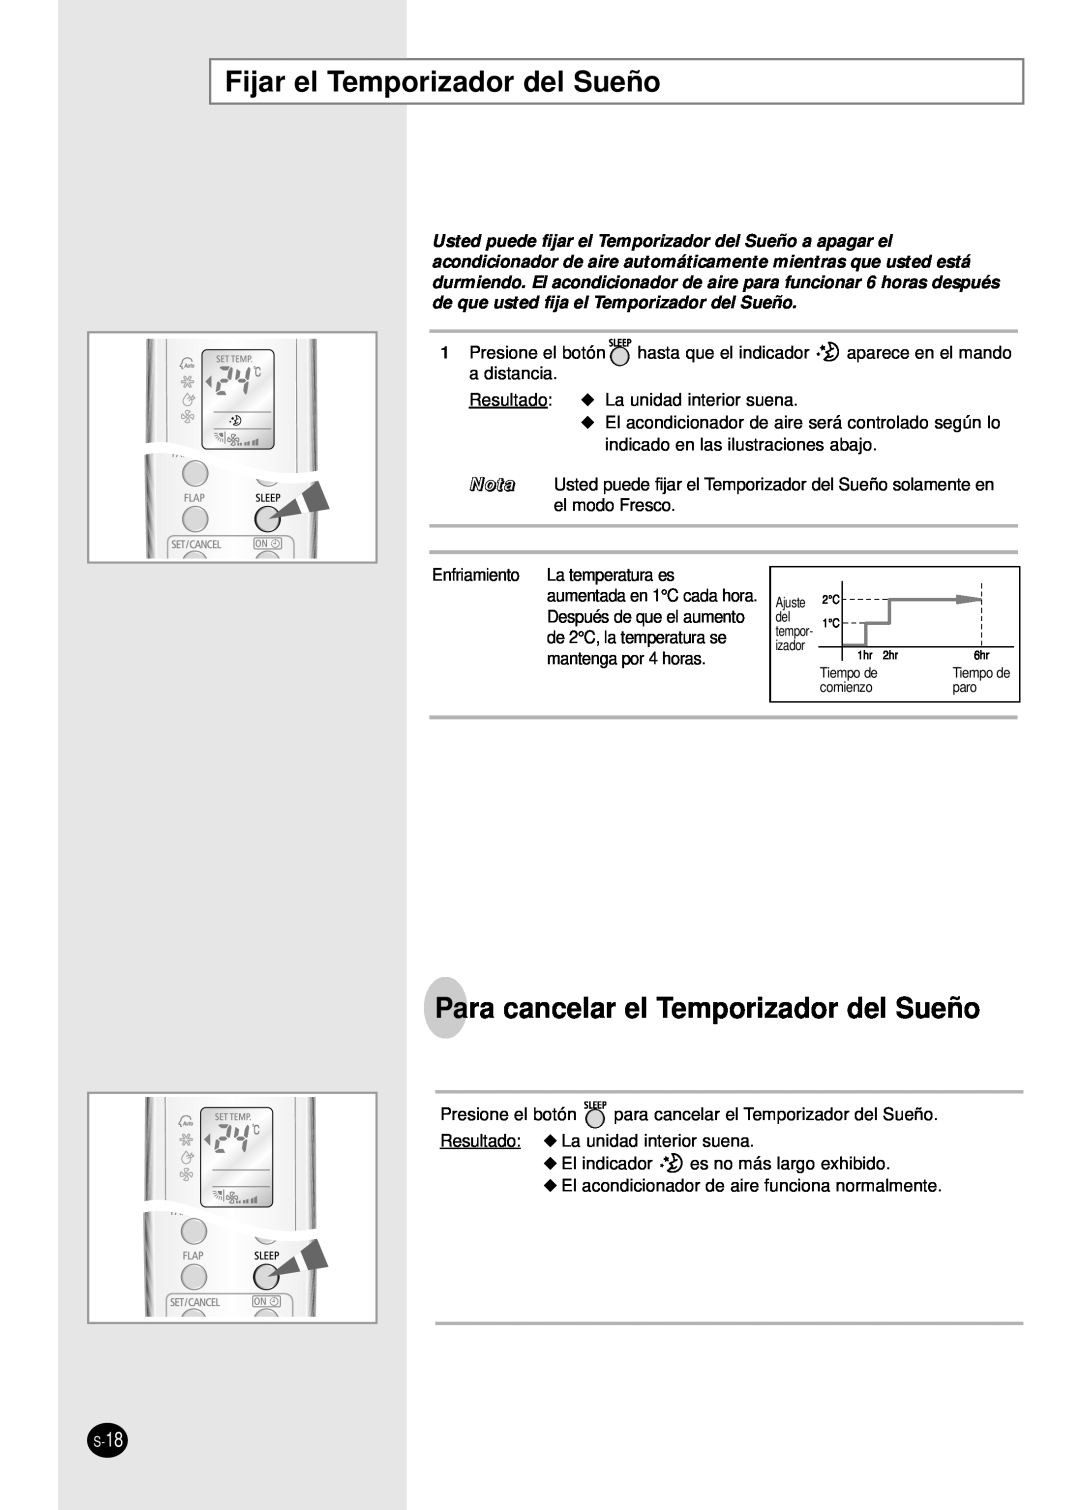 Samsung AS18WJWE/AFR, IAS24W6WE/AFR manual Fijar el Temporizador del Sueño, Para cancelar el Temporizador del Sueño 